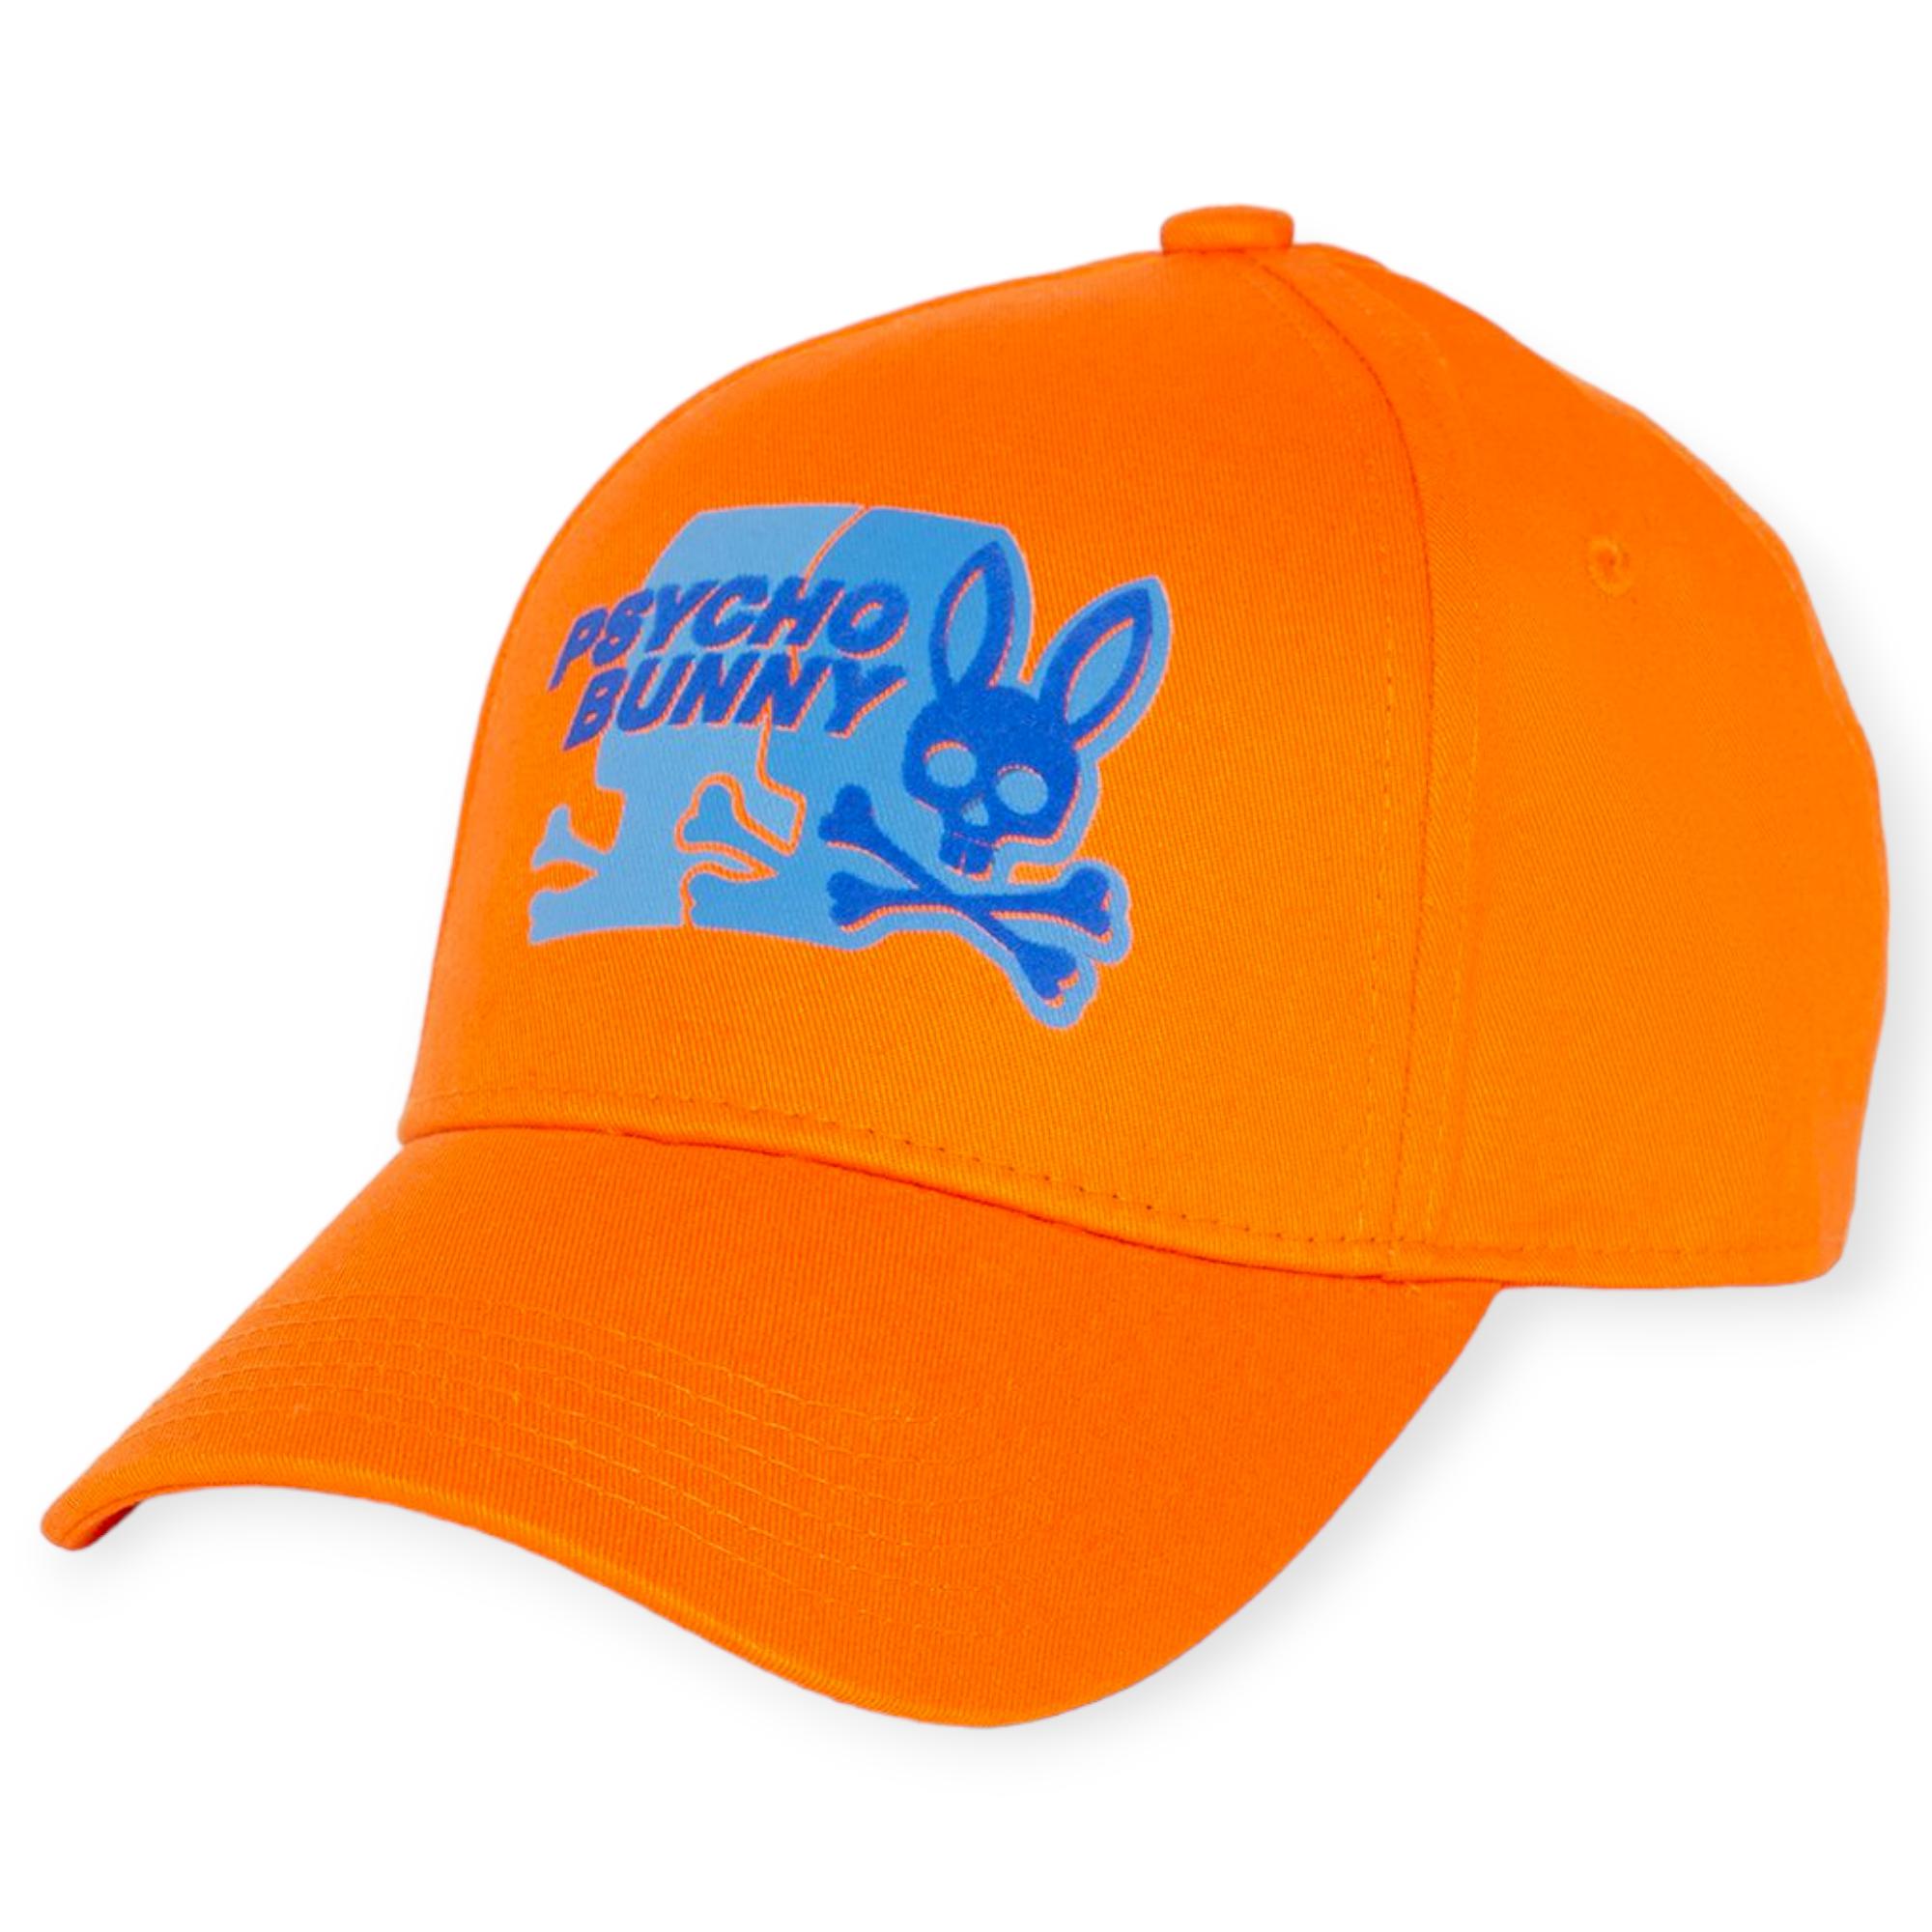 Psycho Bunny Men Kona Baseball Cap (Scarlet Ibis Orange)-Scarlet Ibis Orange-OneSize-Nexus Clothing